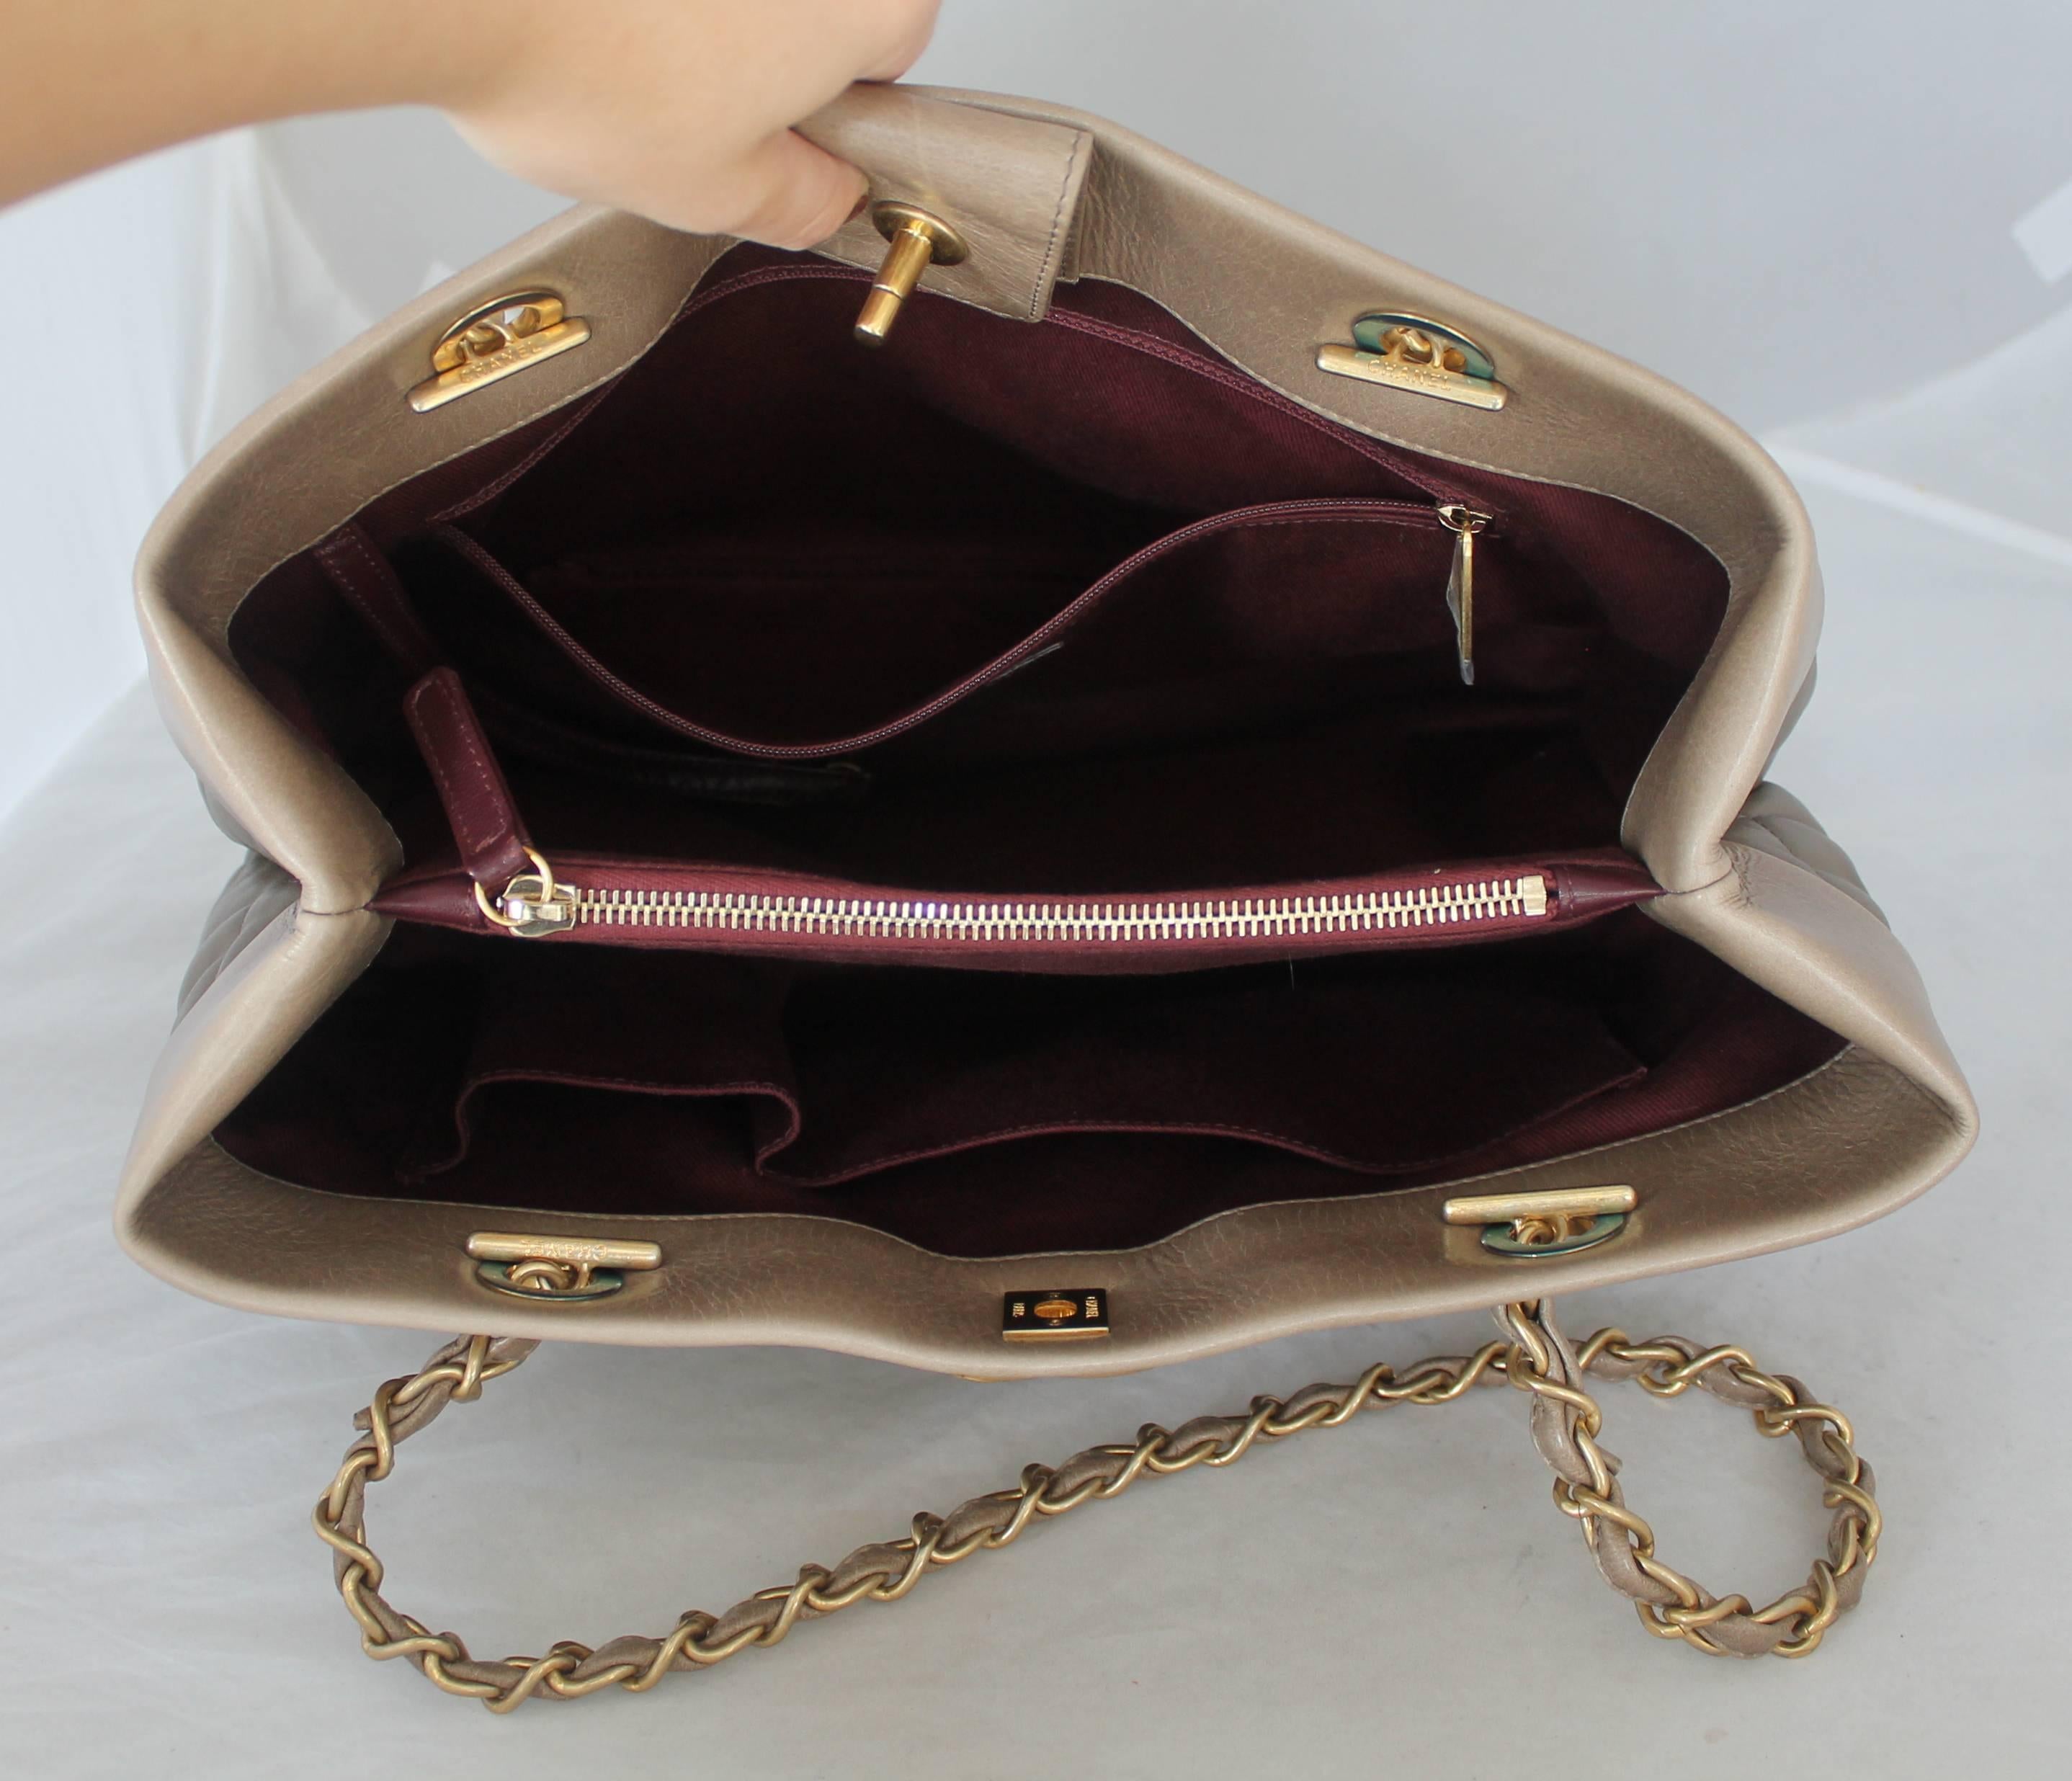 Chanel 2013 Taupe Soft Elegance Tote Shoulder Bag - GHW 2